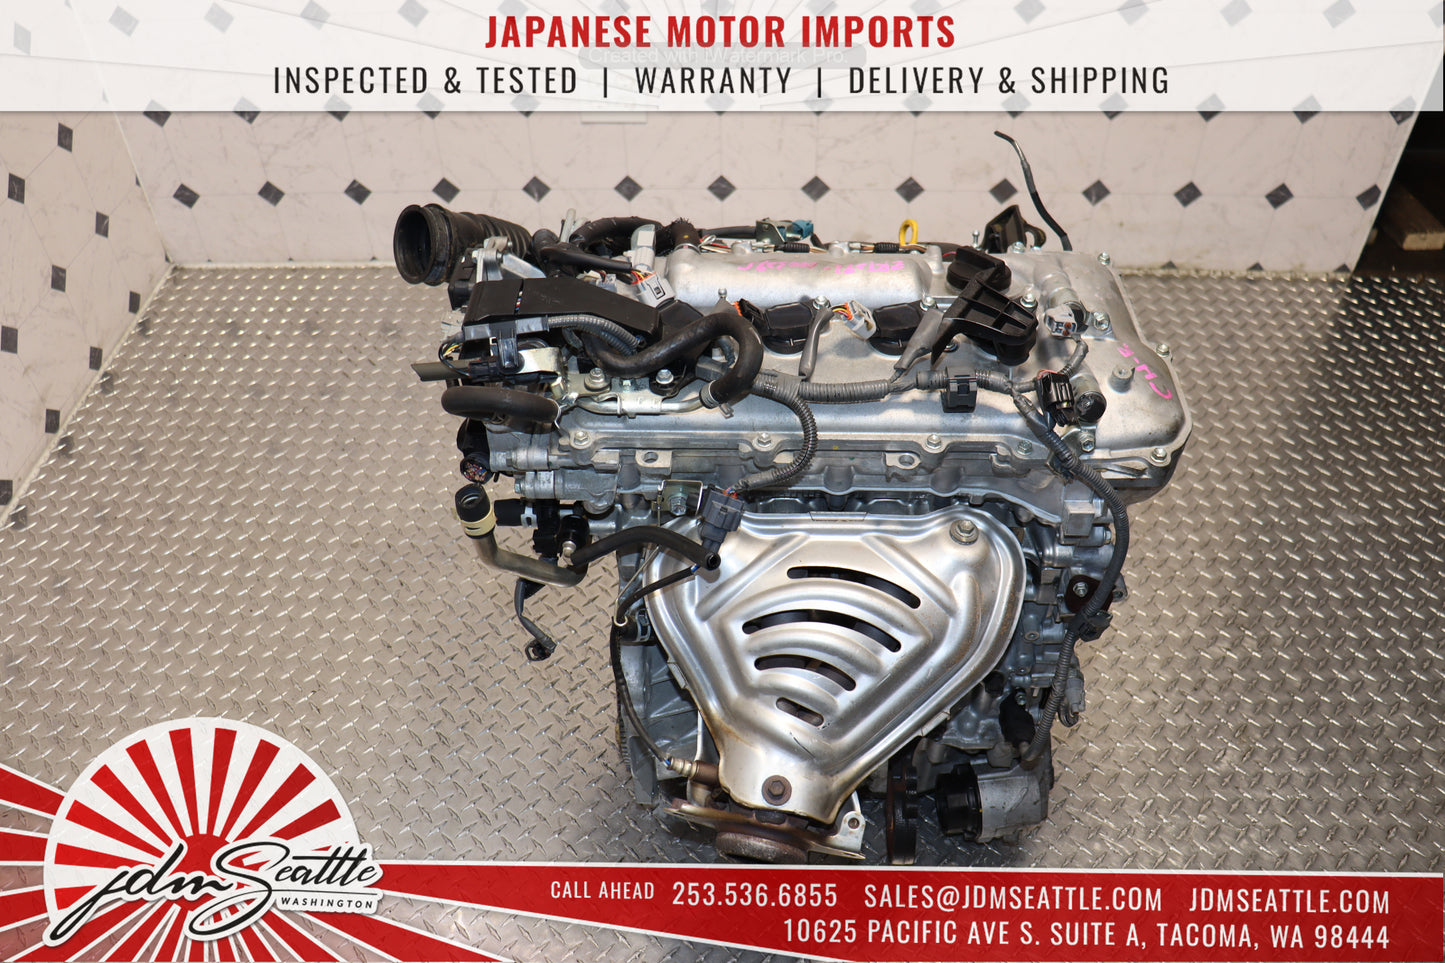 JDM Toyota C-HR Engine 2018-2022 3ZR-FAE 2.0L VVTi MOTOR TOYOTA CHR 18 19 20 21 22